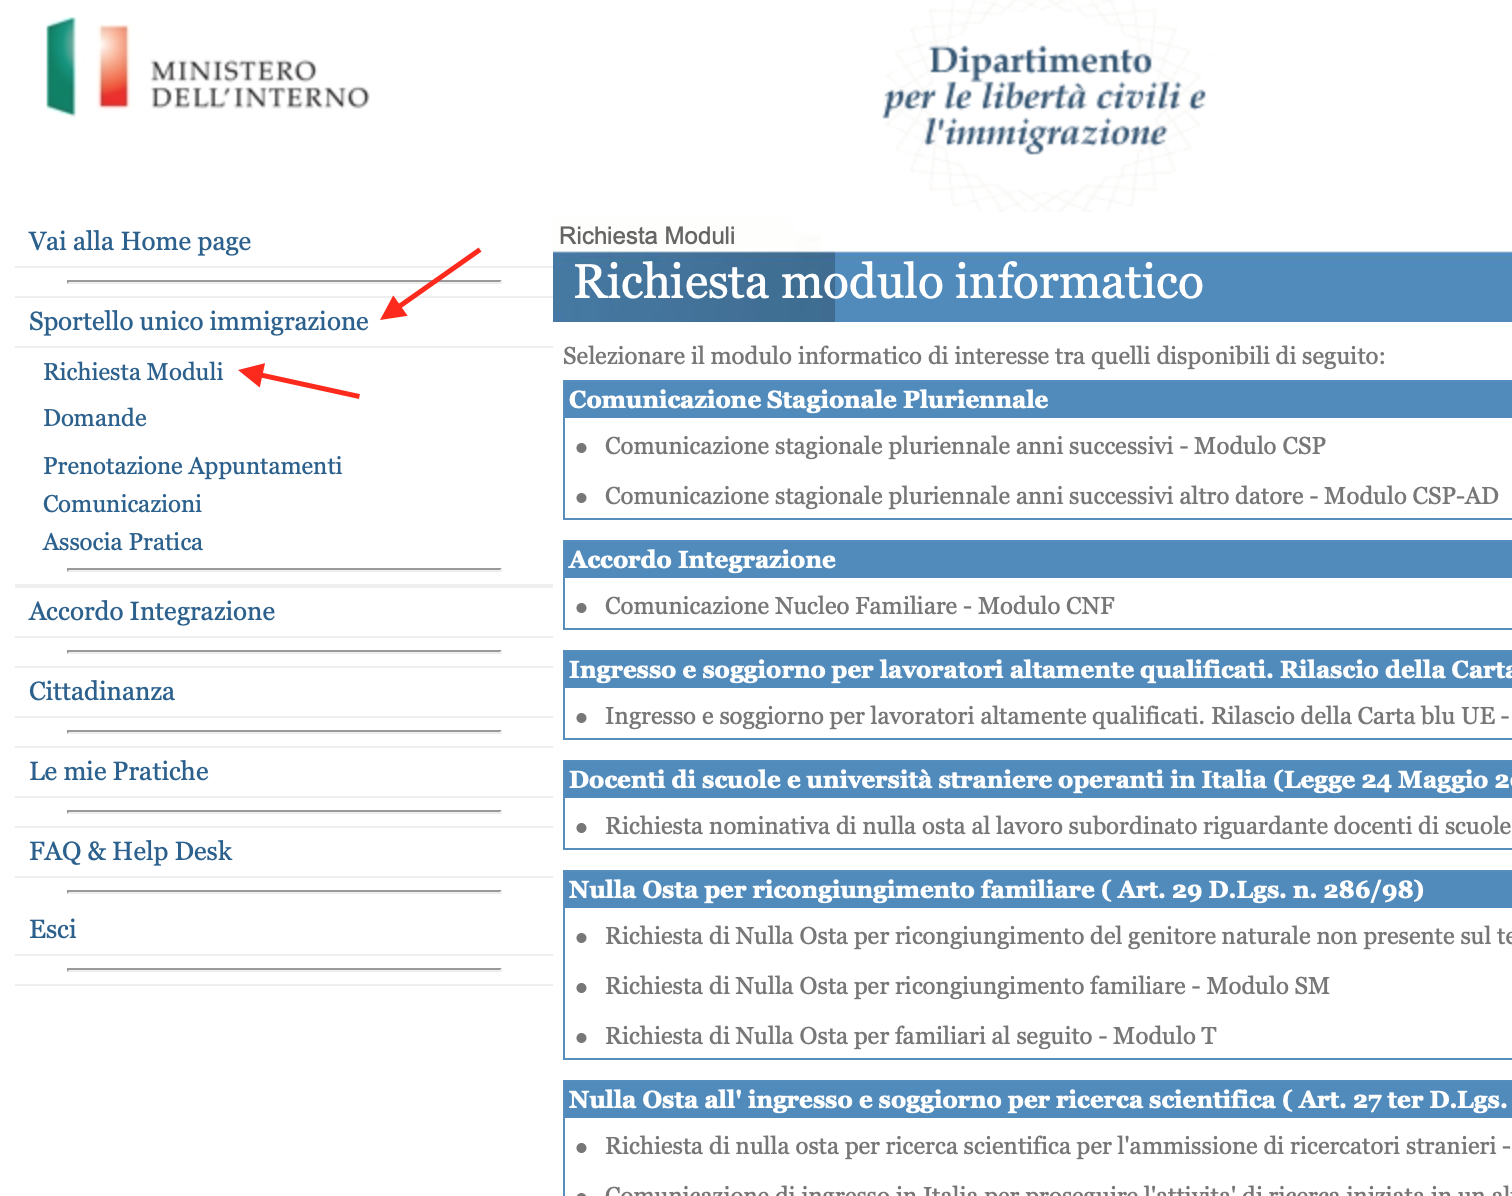 Процедура регистрации на тест на знание итальянского языка для получения долгосрочного ВНЖ в Италии